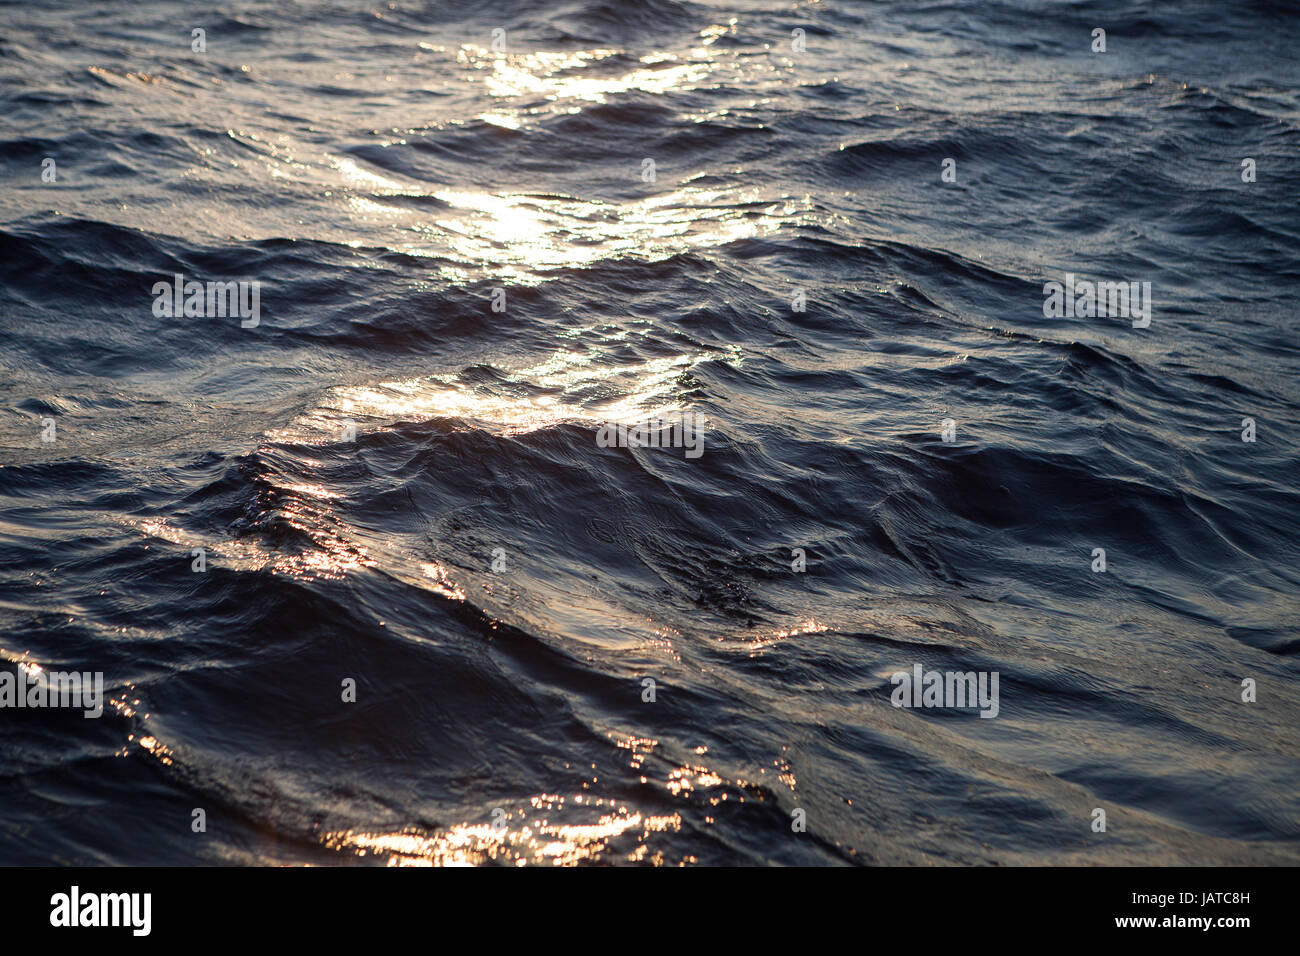 Les vagues de l'océan et la surface de l'eau au coucher du soleil Banque D'Images